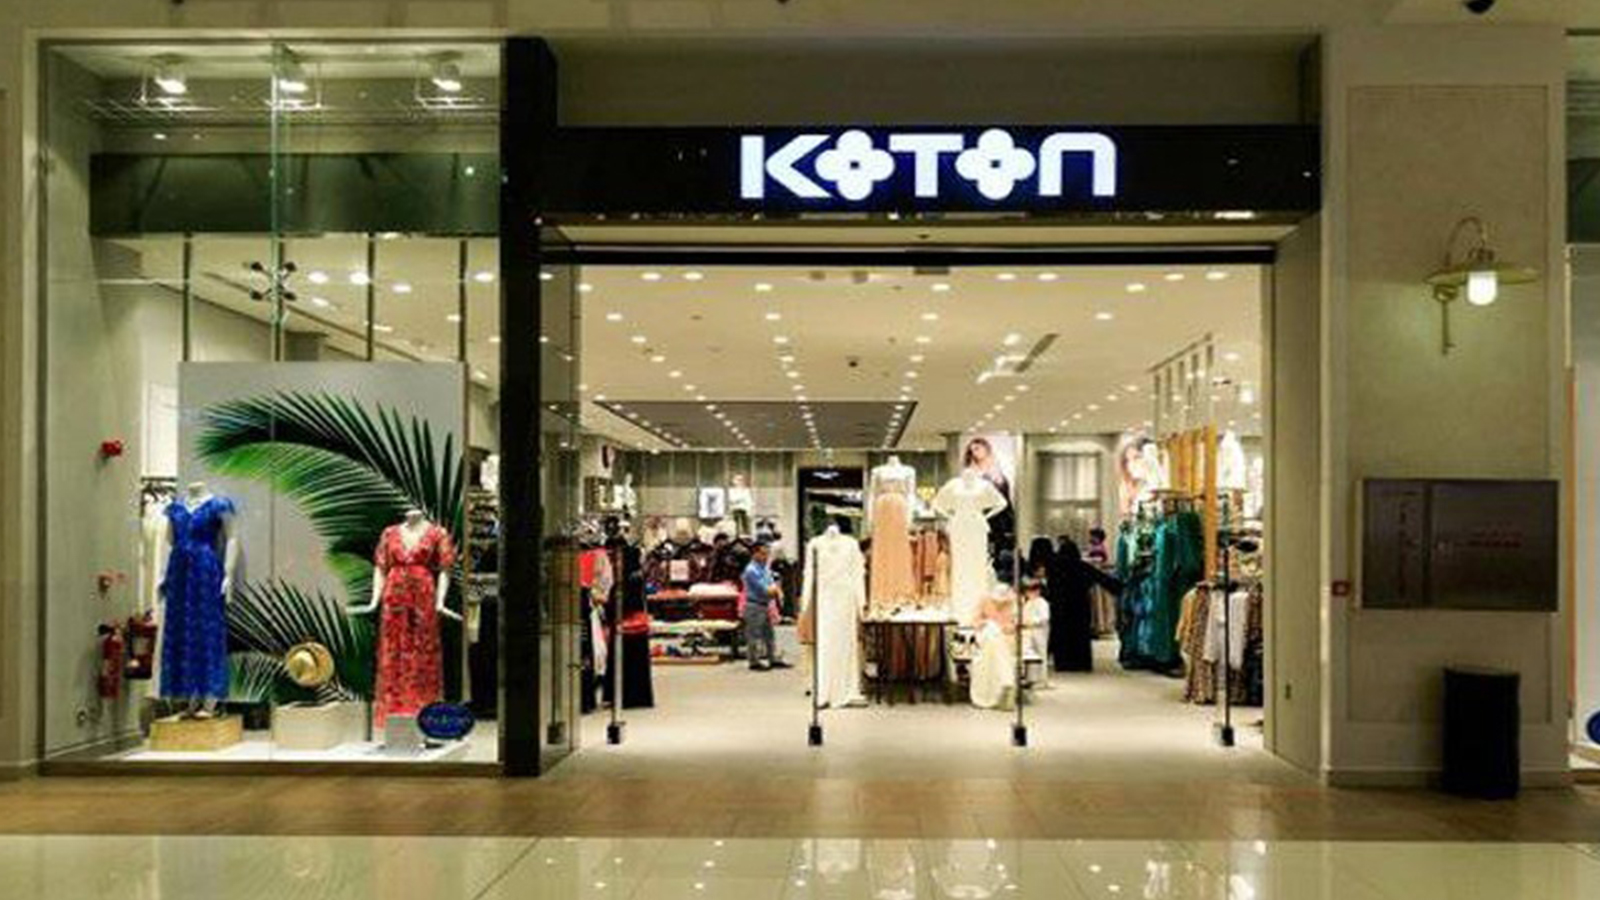 Koton - Clothing Company in Turkey